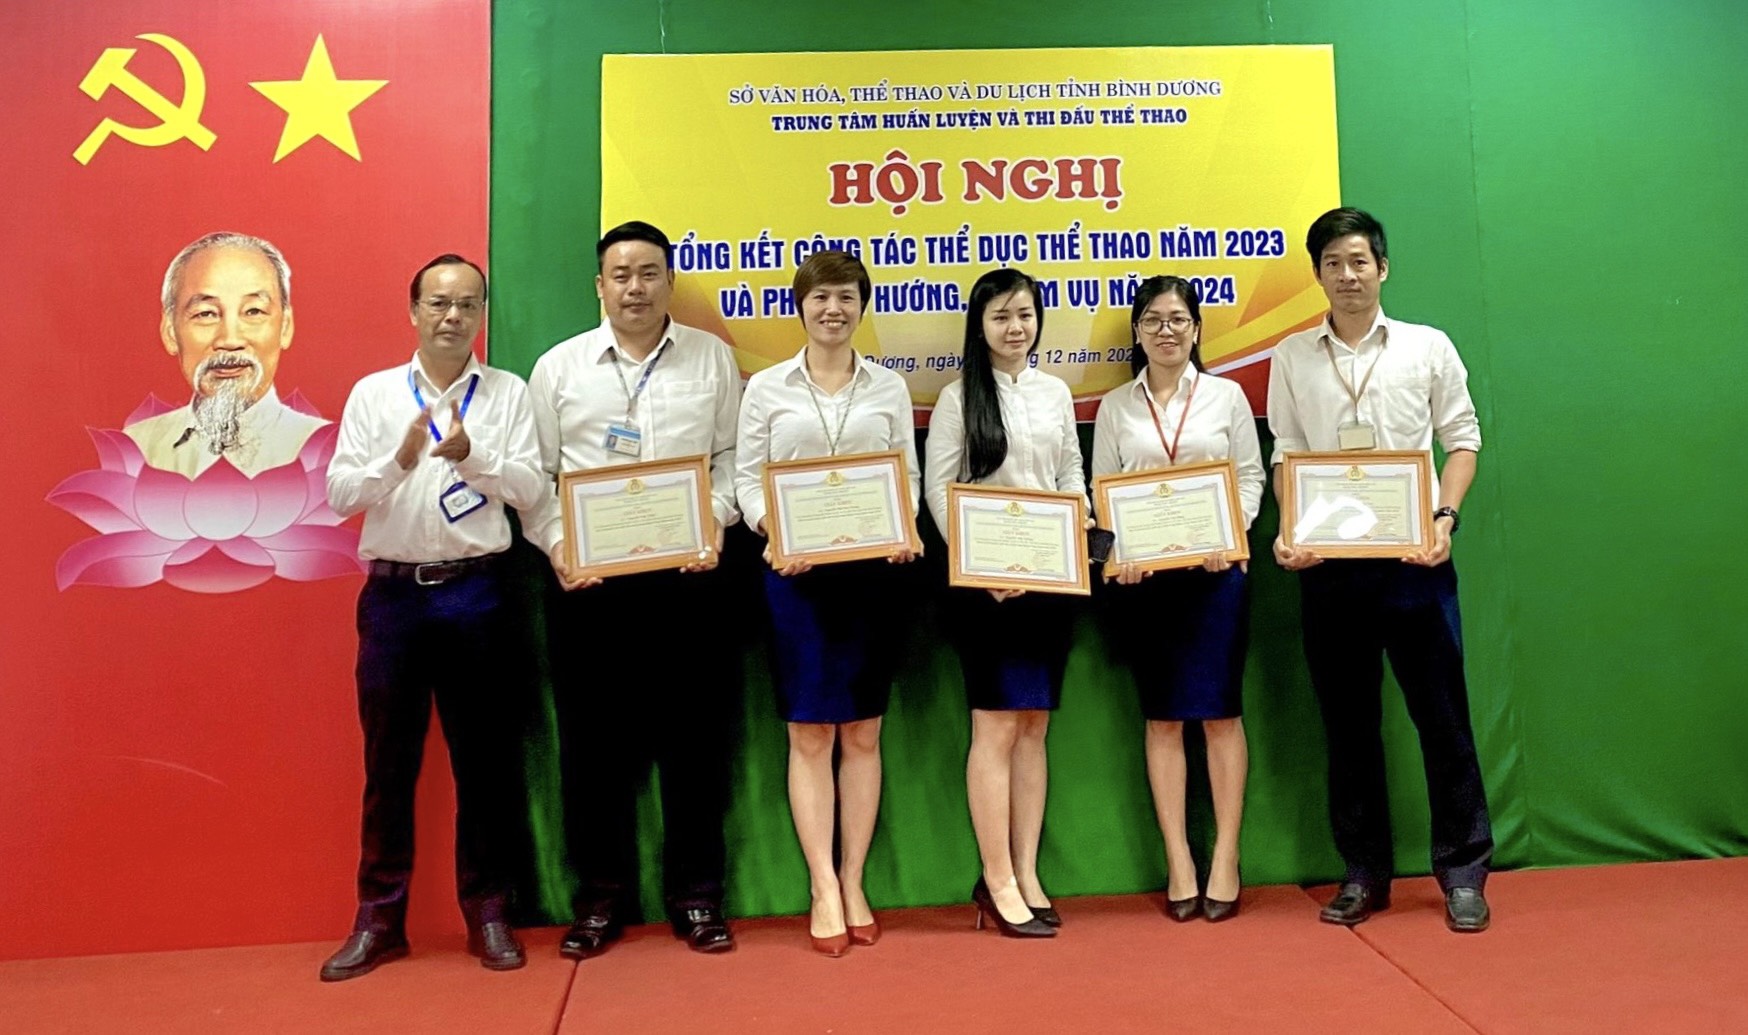 Ông Nguyễn Ngô Bảo Quốc – Phó chủ tịch Công đoàn cơ sở Sở VHTTDL Bình Dương trao tặng giấy khen của Công đoàn cơ sở Sở VHTTDL cho các cá nhân Trung tâm HLTĐTT tỉnh Bình Dương